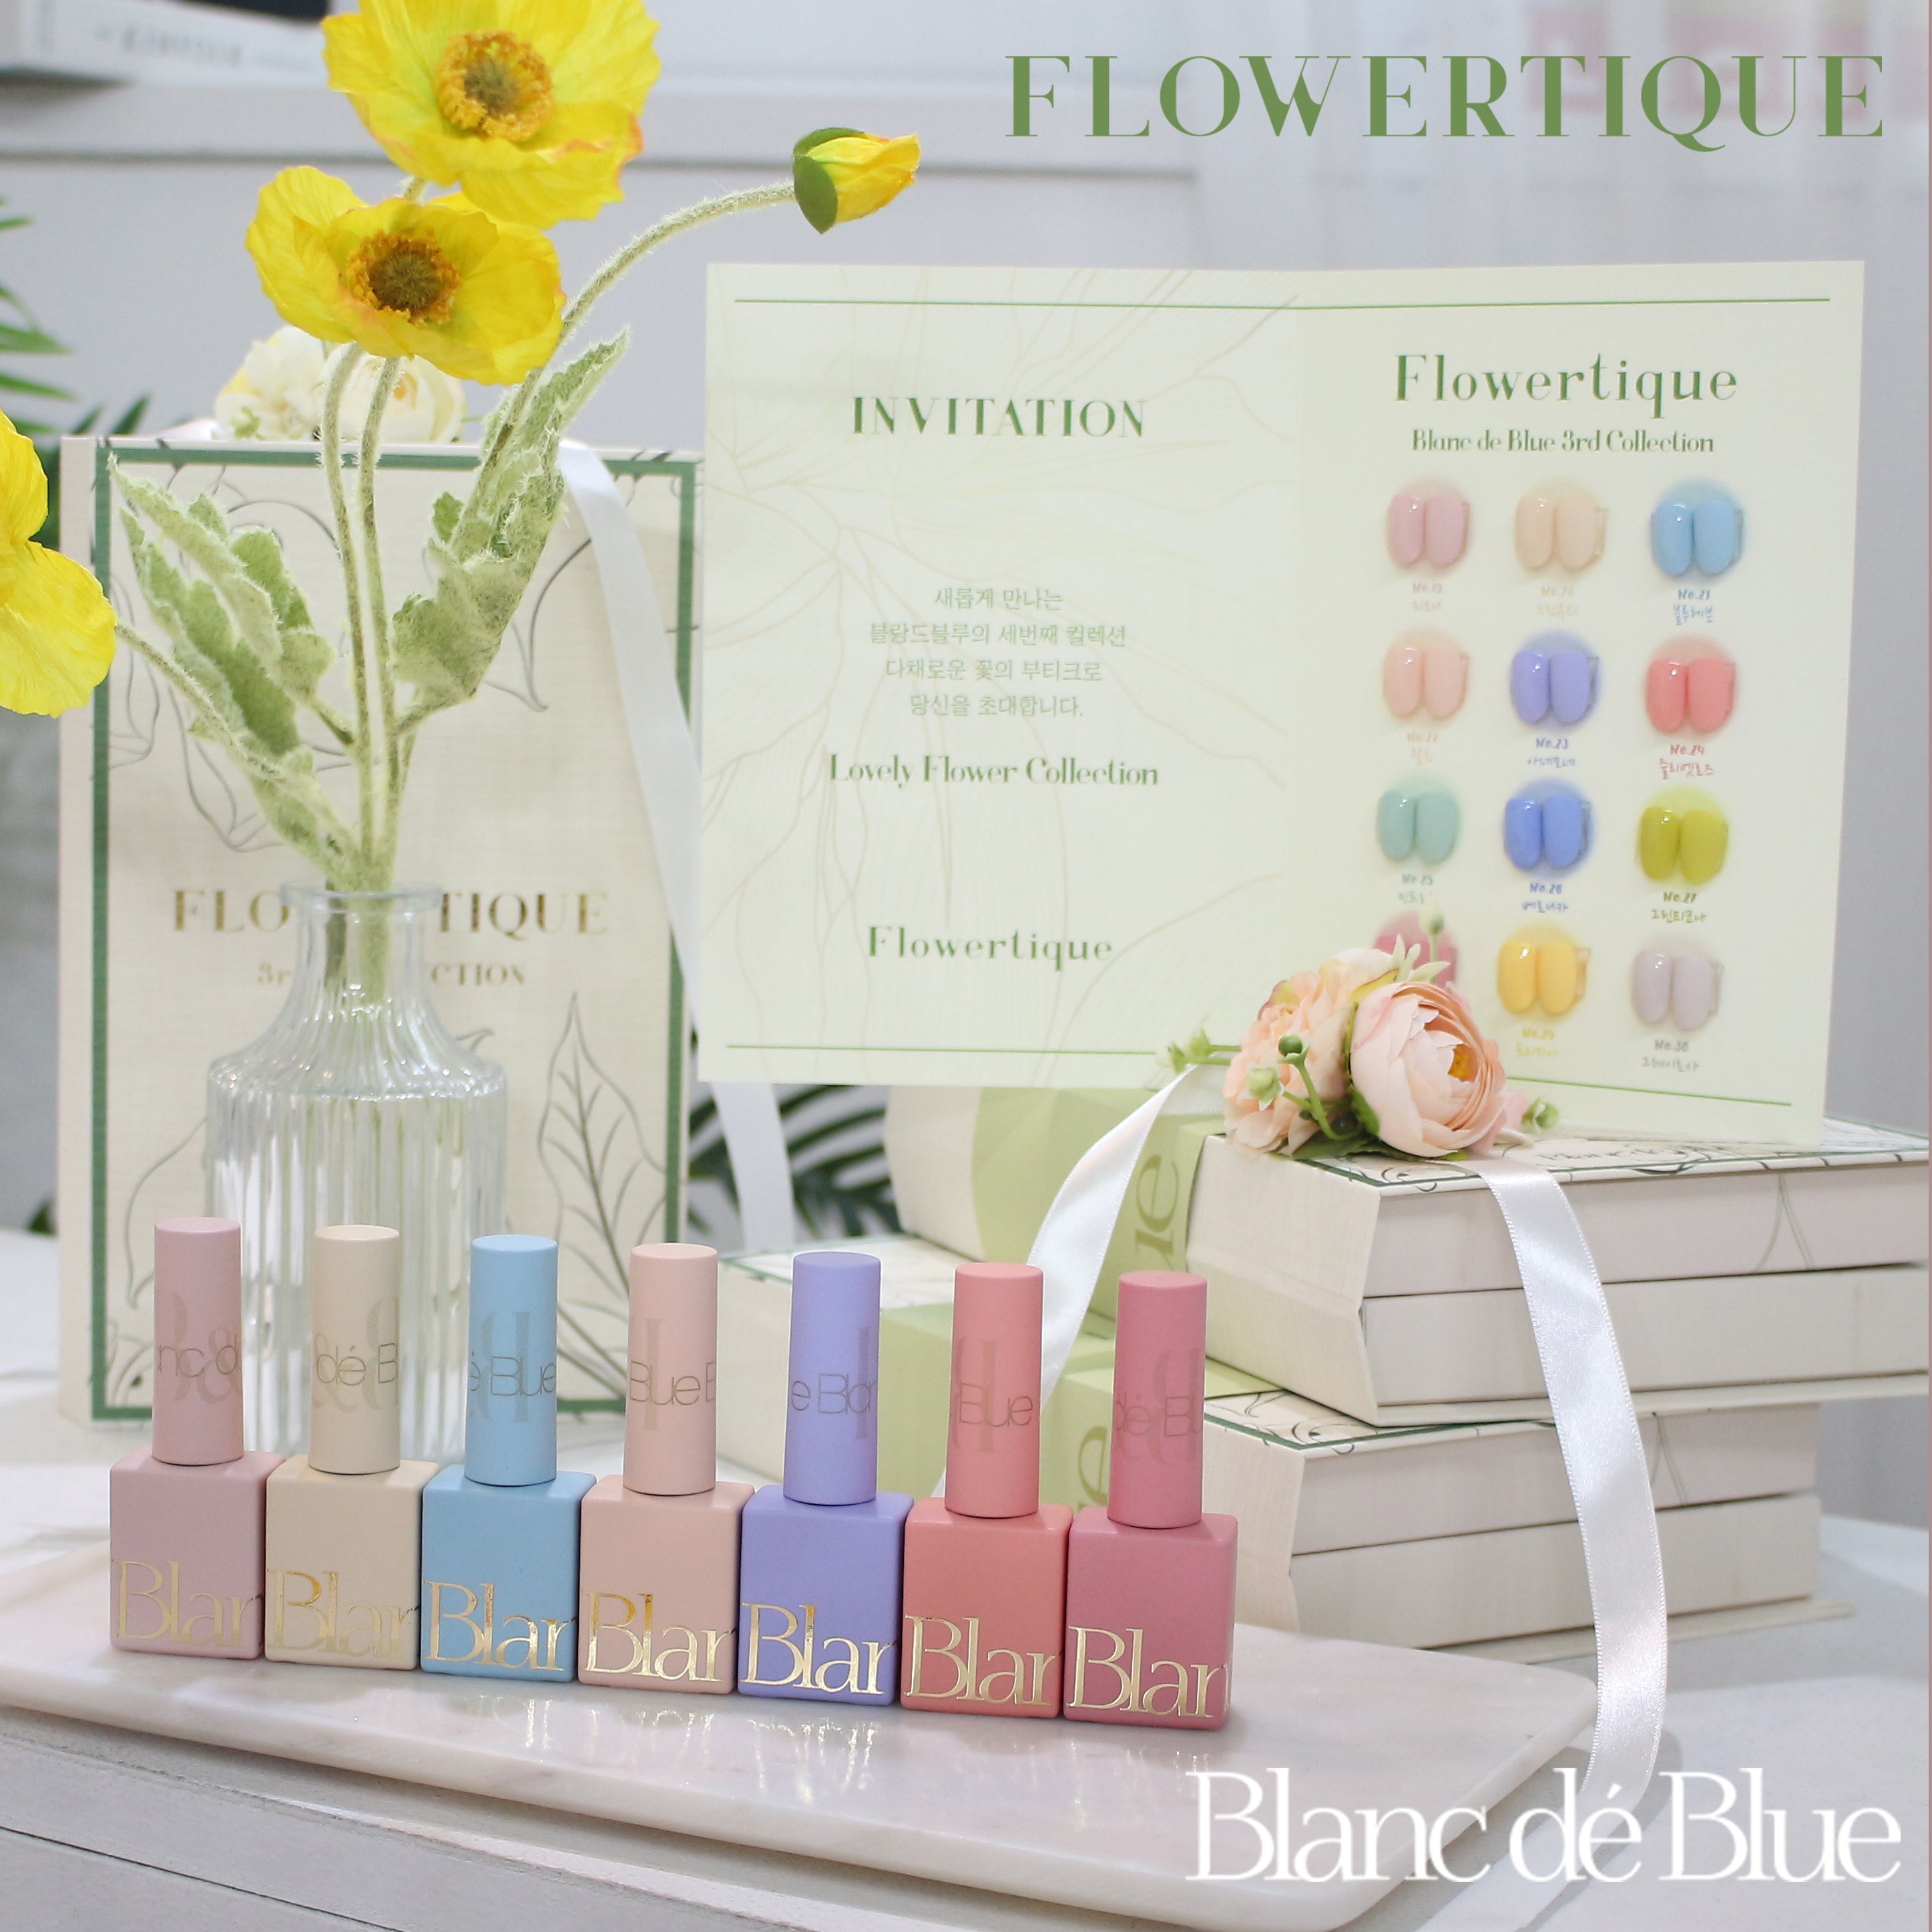 BLANC DE BLUE Flowertique collection - individual bottles